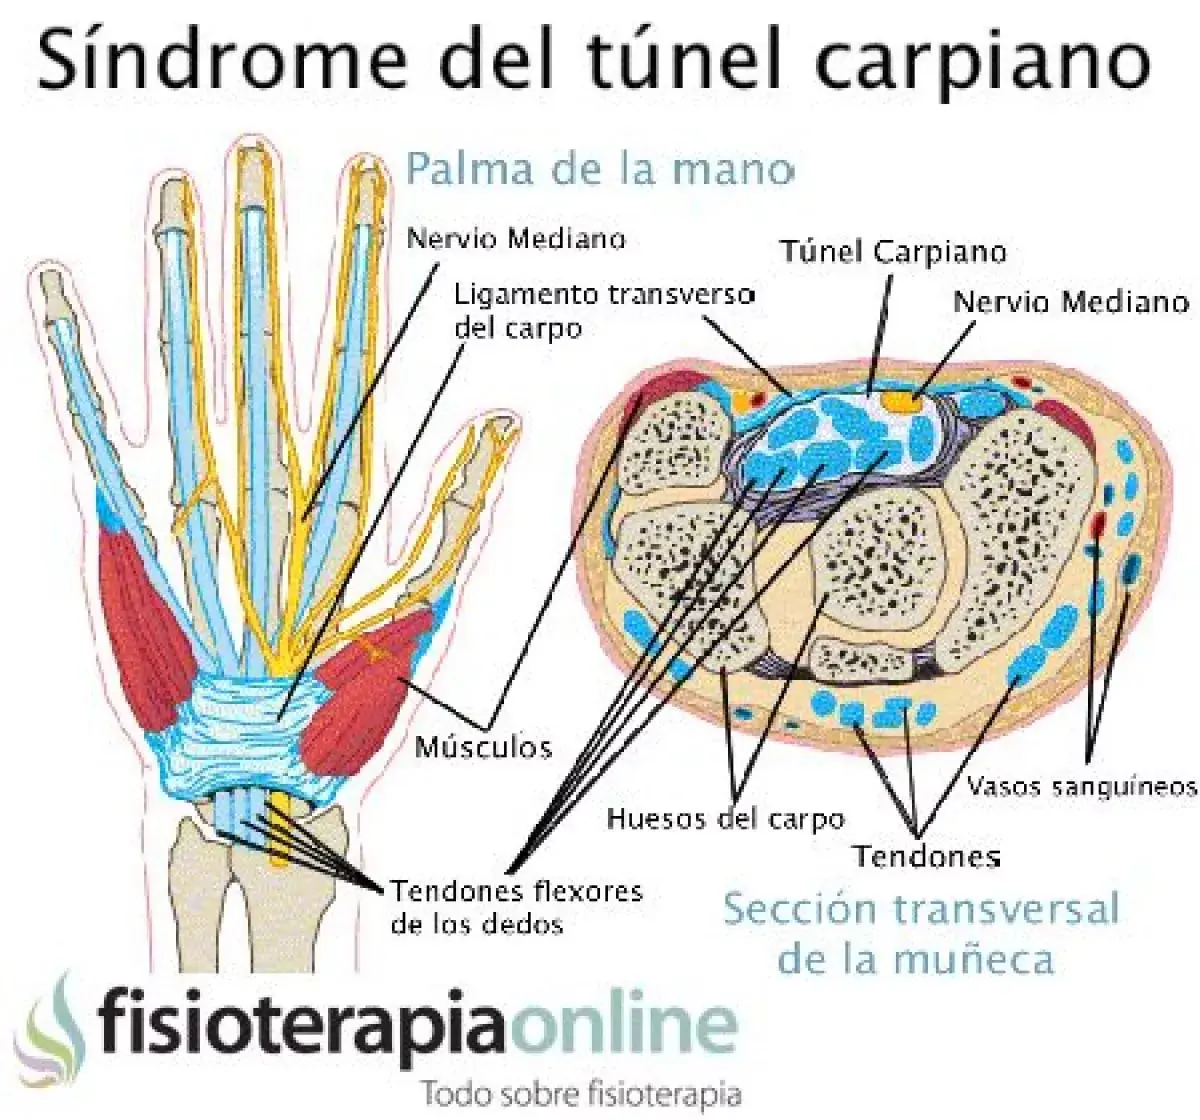 anatomía sindrome del tunel carpiano